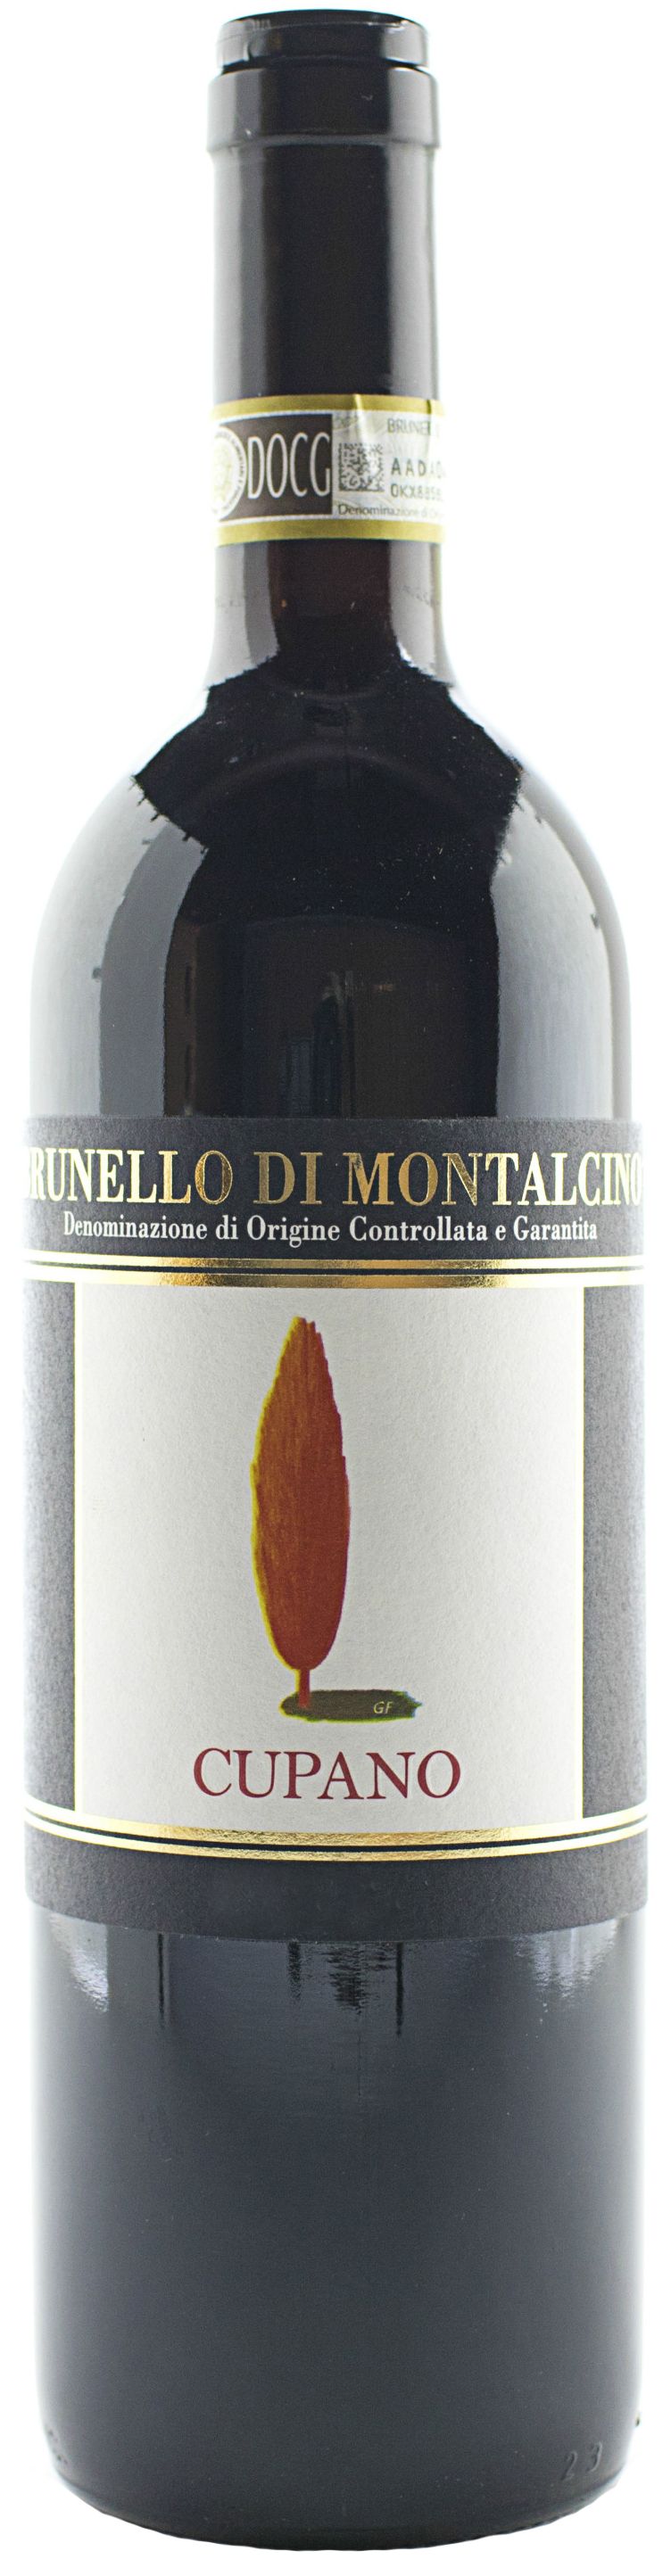 Cupano, Brunello Di Montalcino, 2003